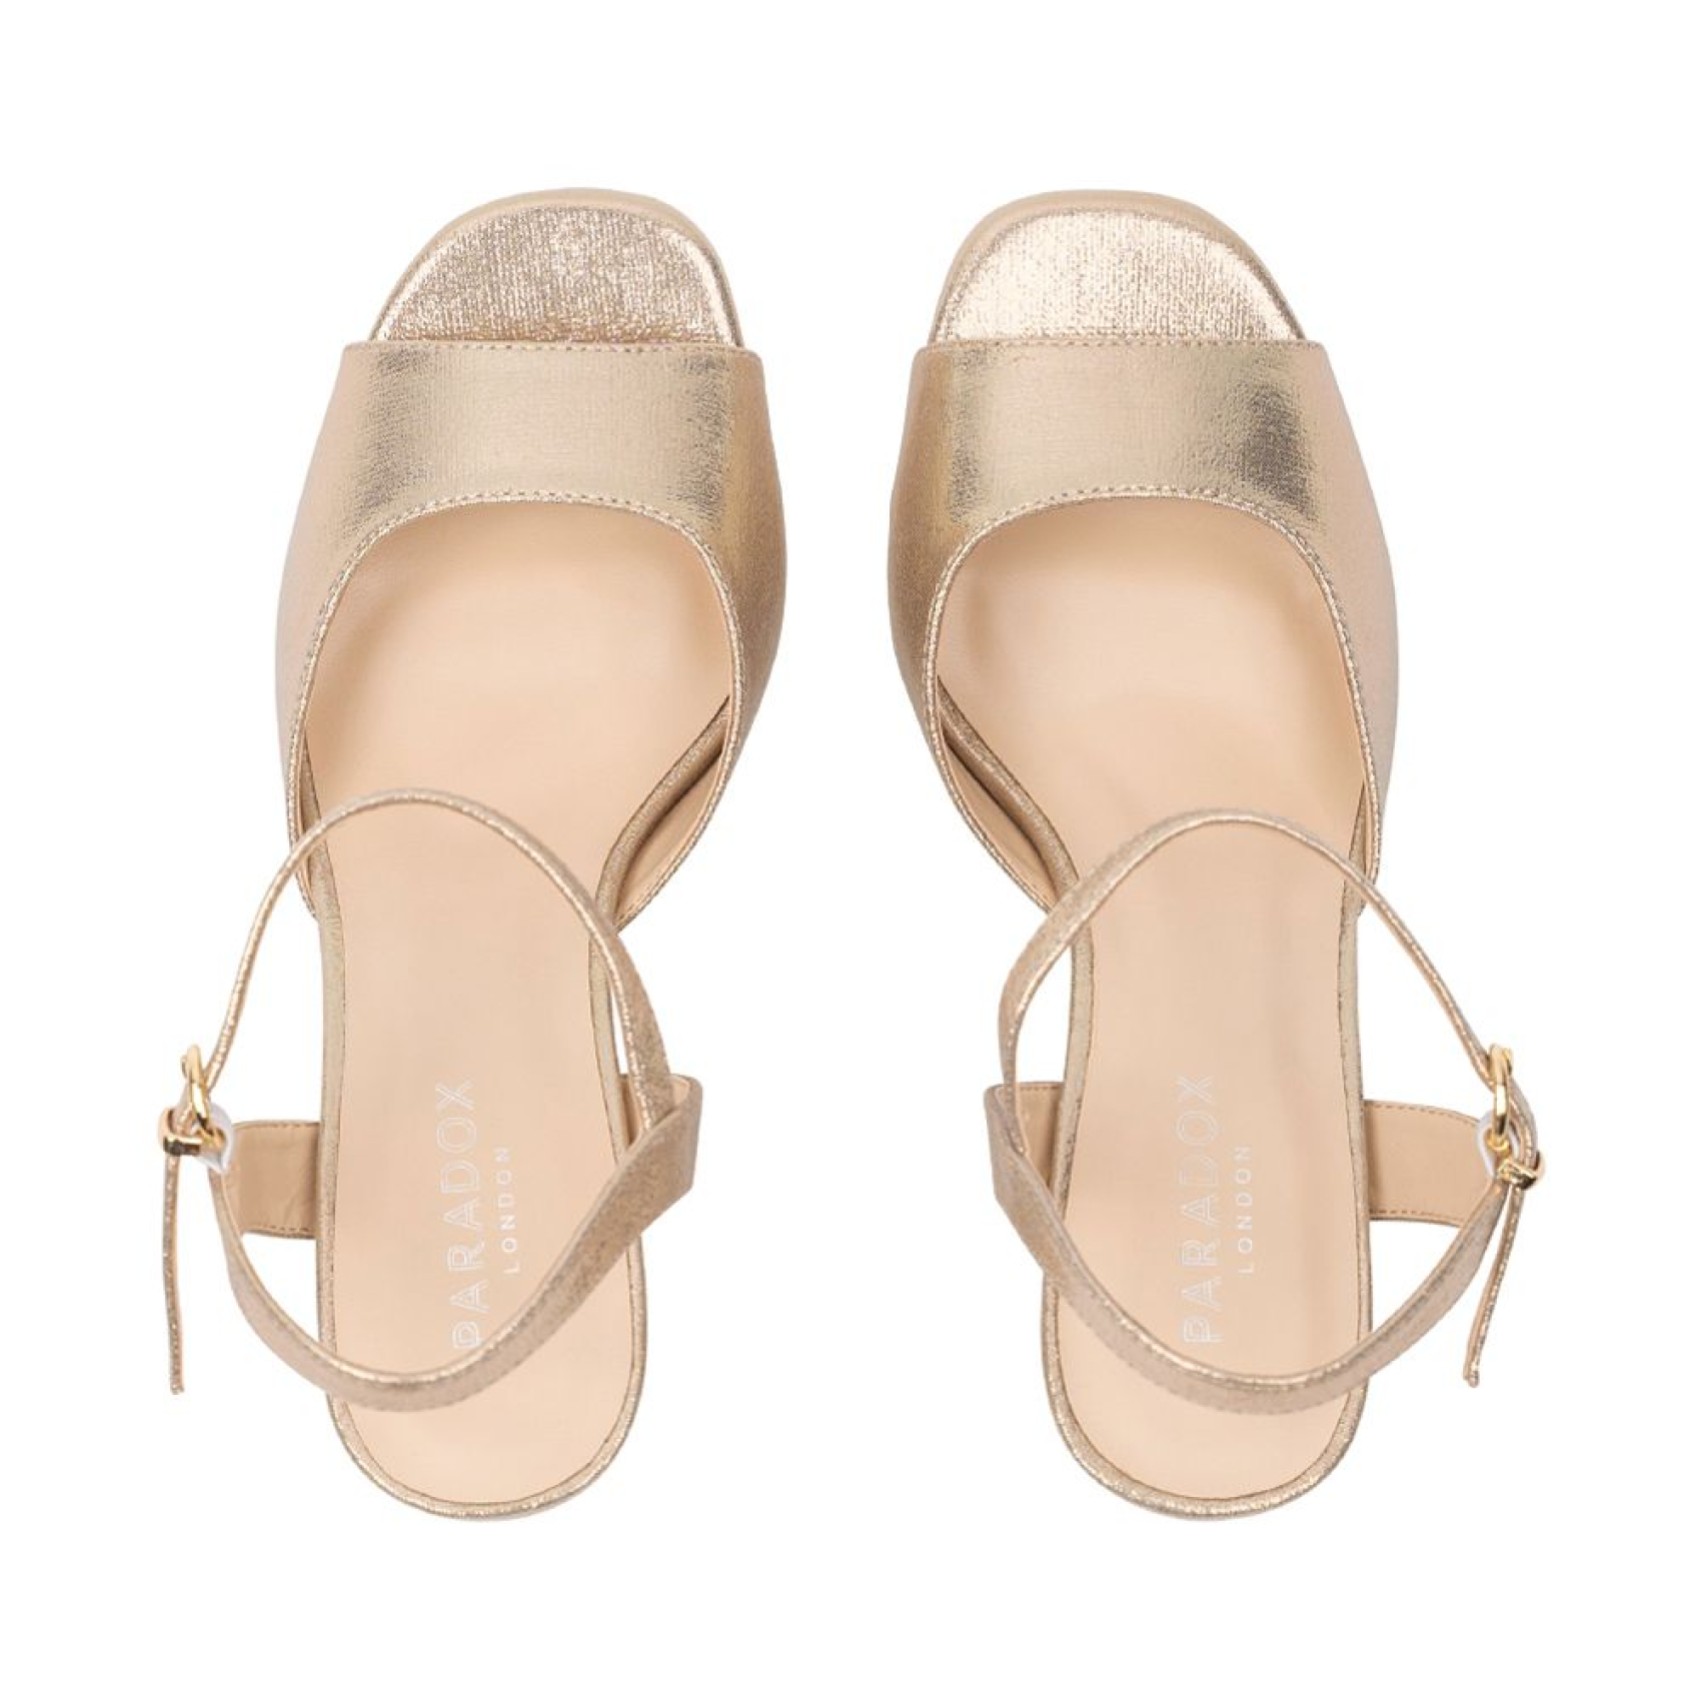 Lolita Champagne Shimmer High Block Heel Platform Sandals